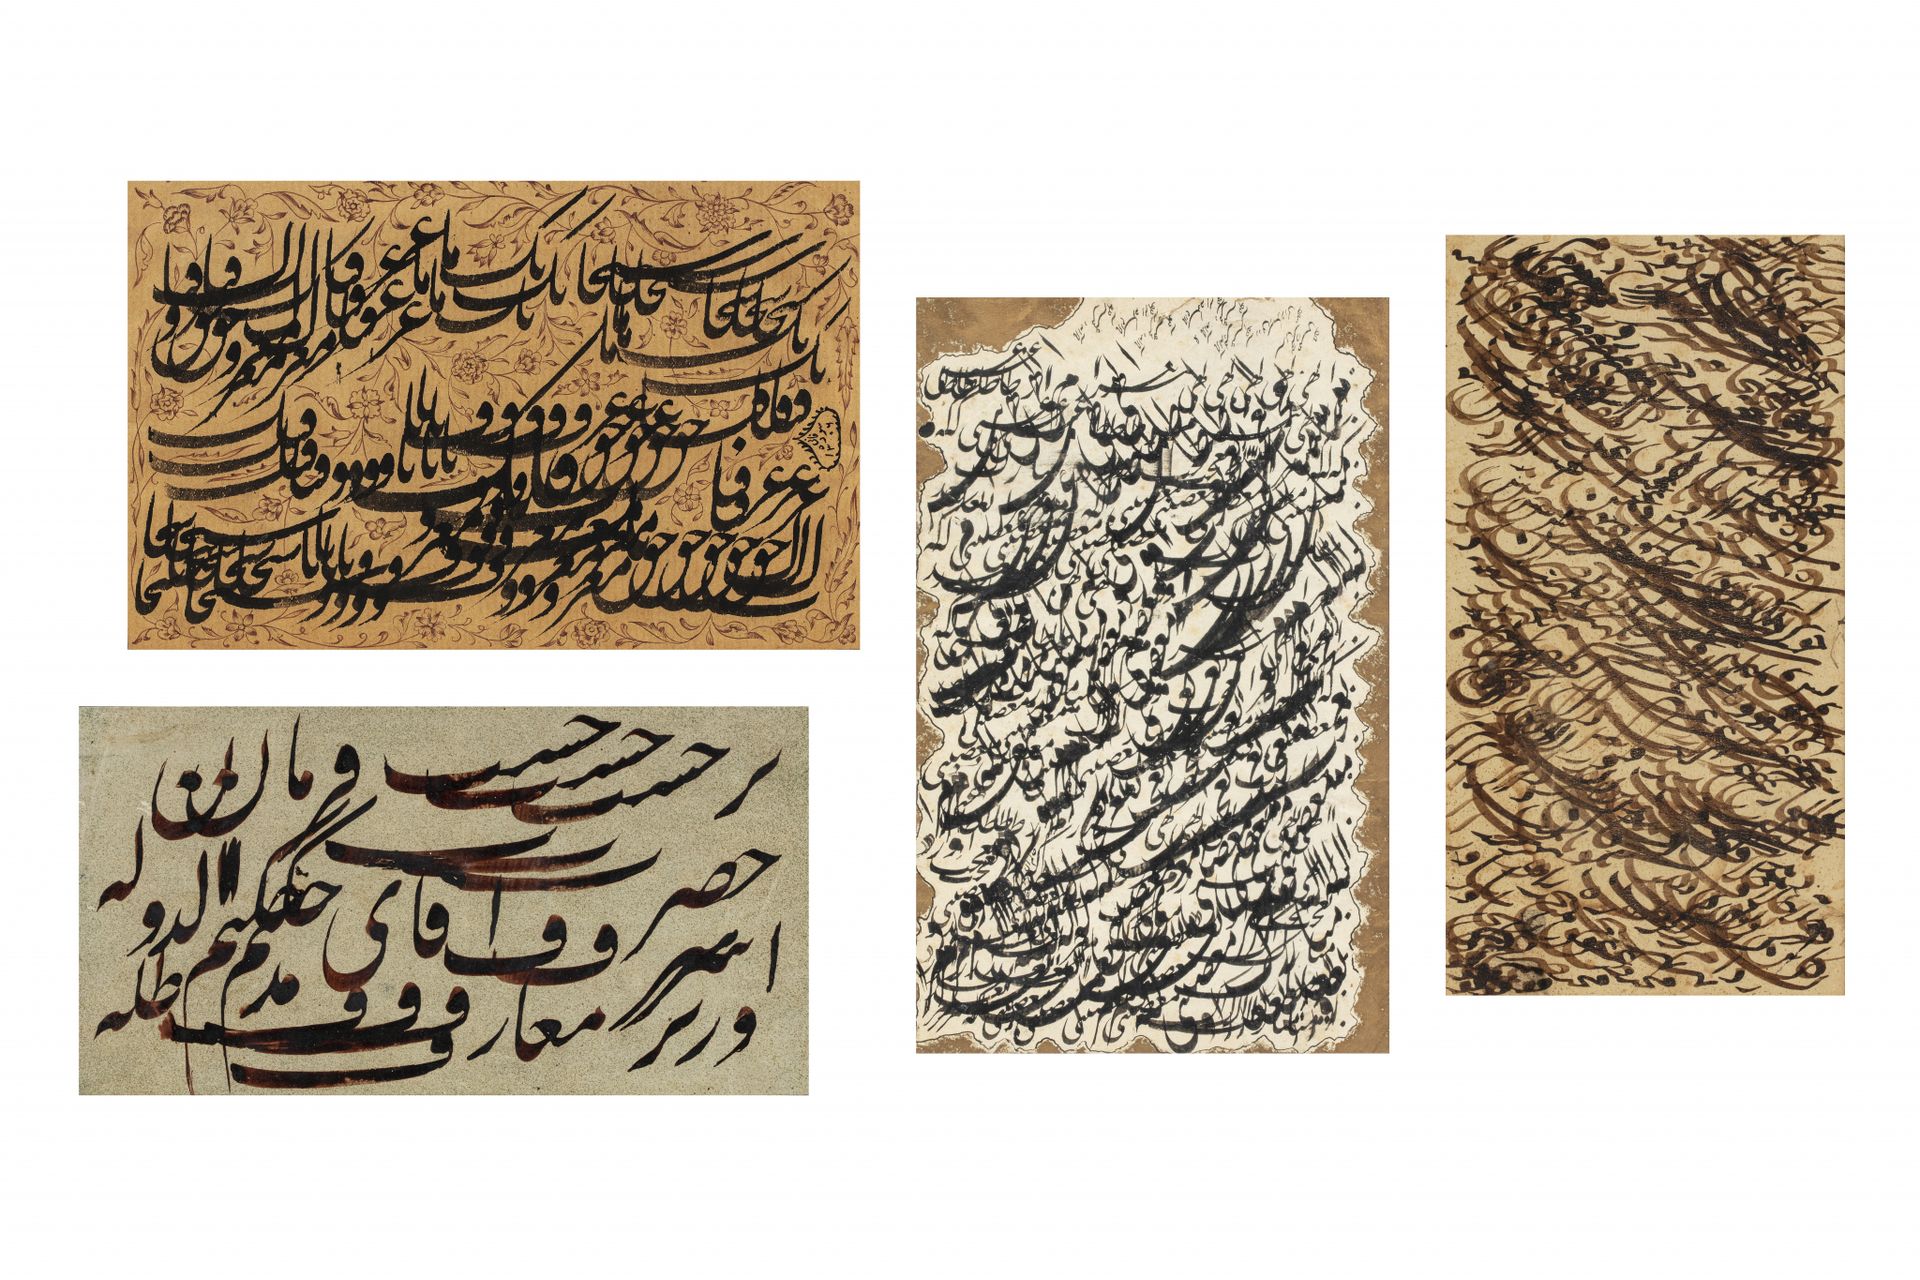 Turquie, fin du XIXe siècle Quatre exercices calligraphiques

Sur papier à l'enc&hellip;